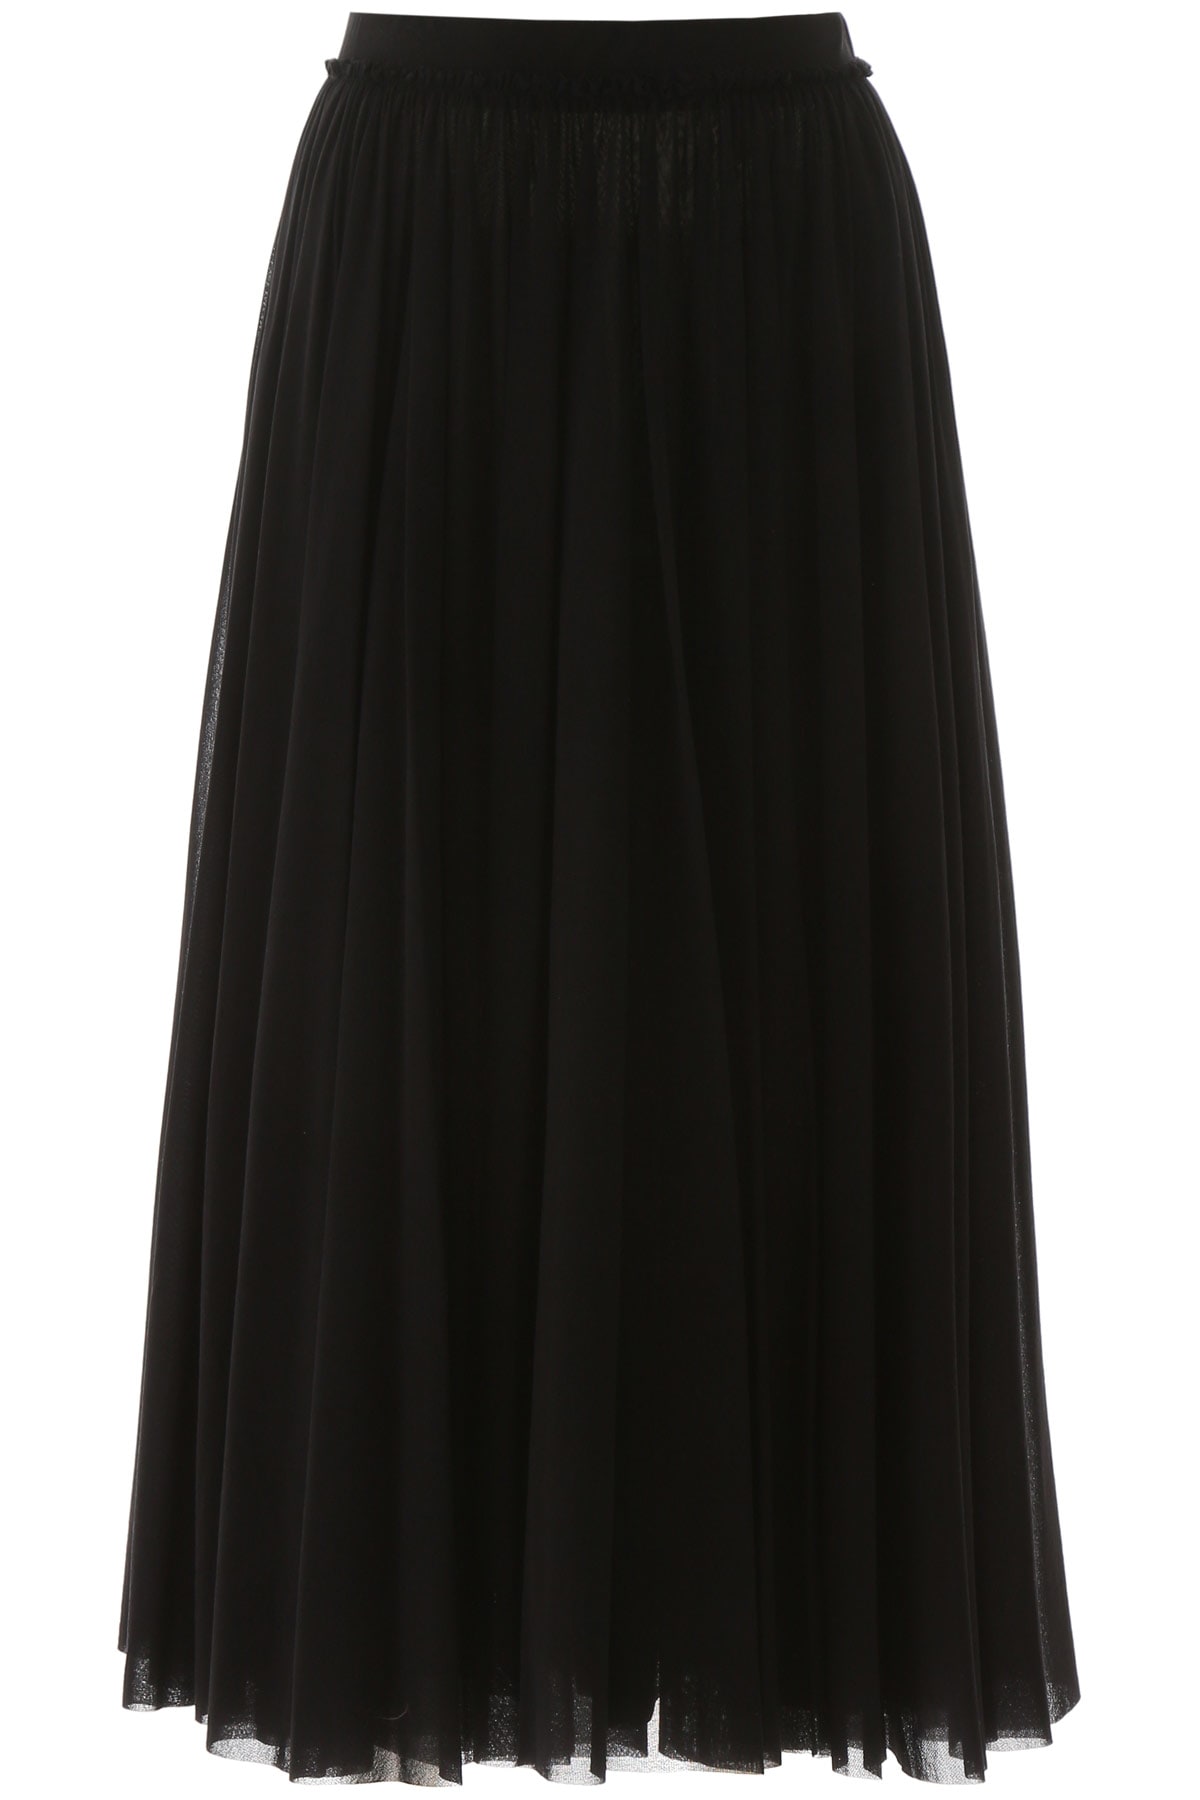 Jil Sander Tulle Skirt In Black (black)